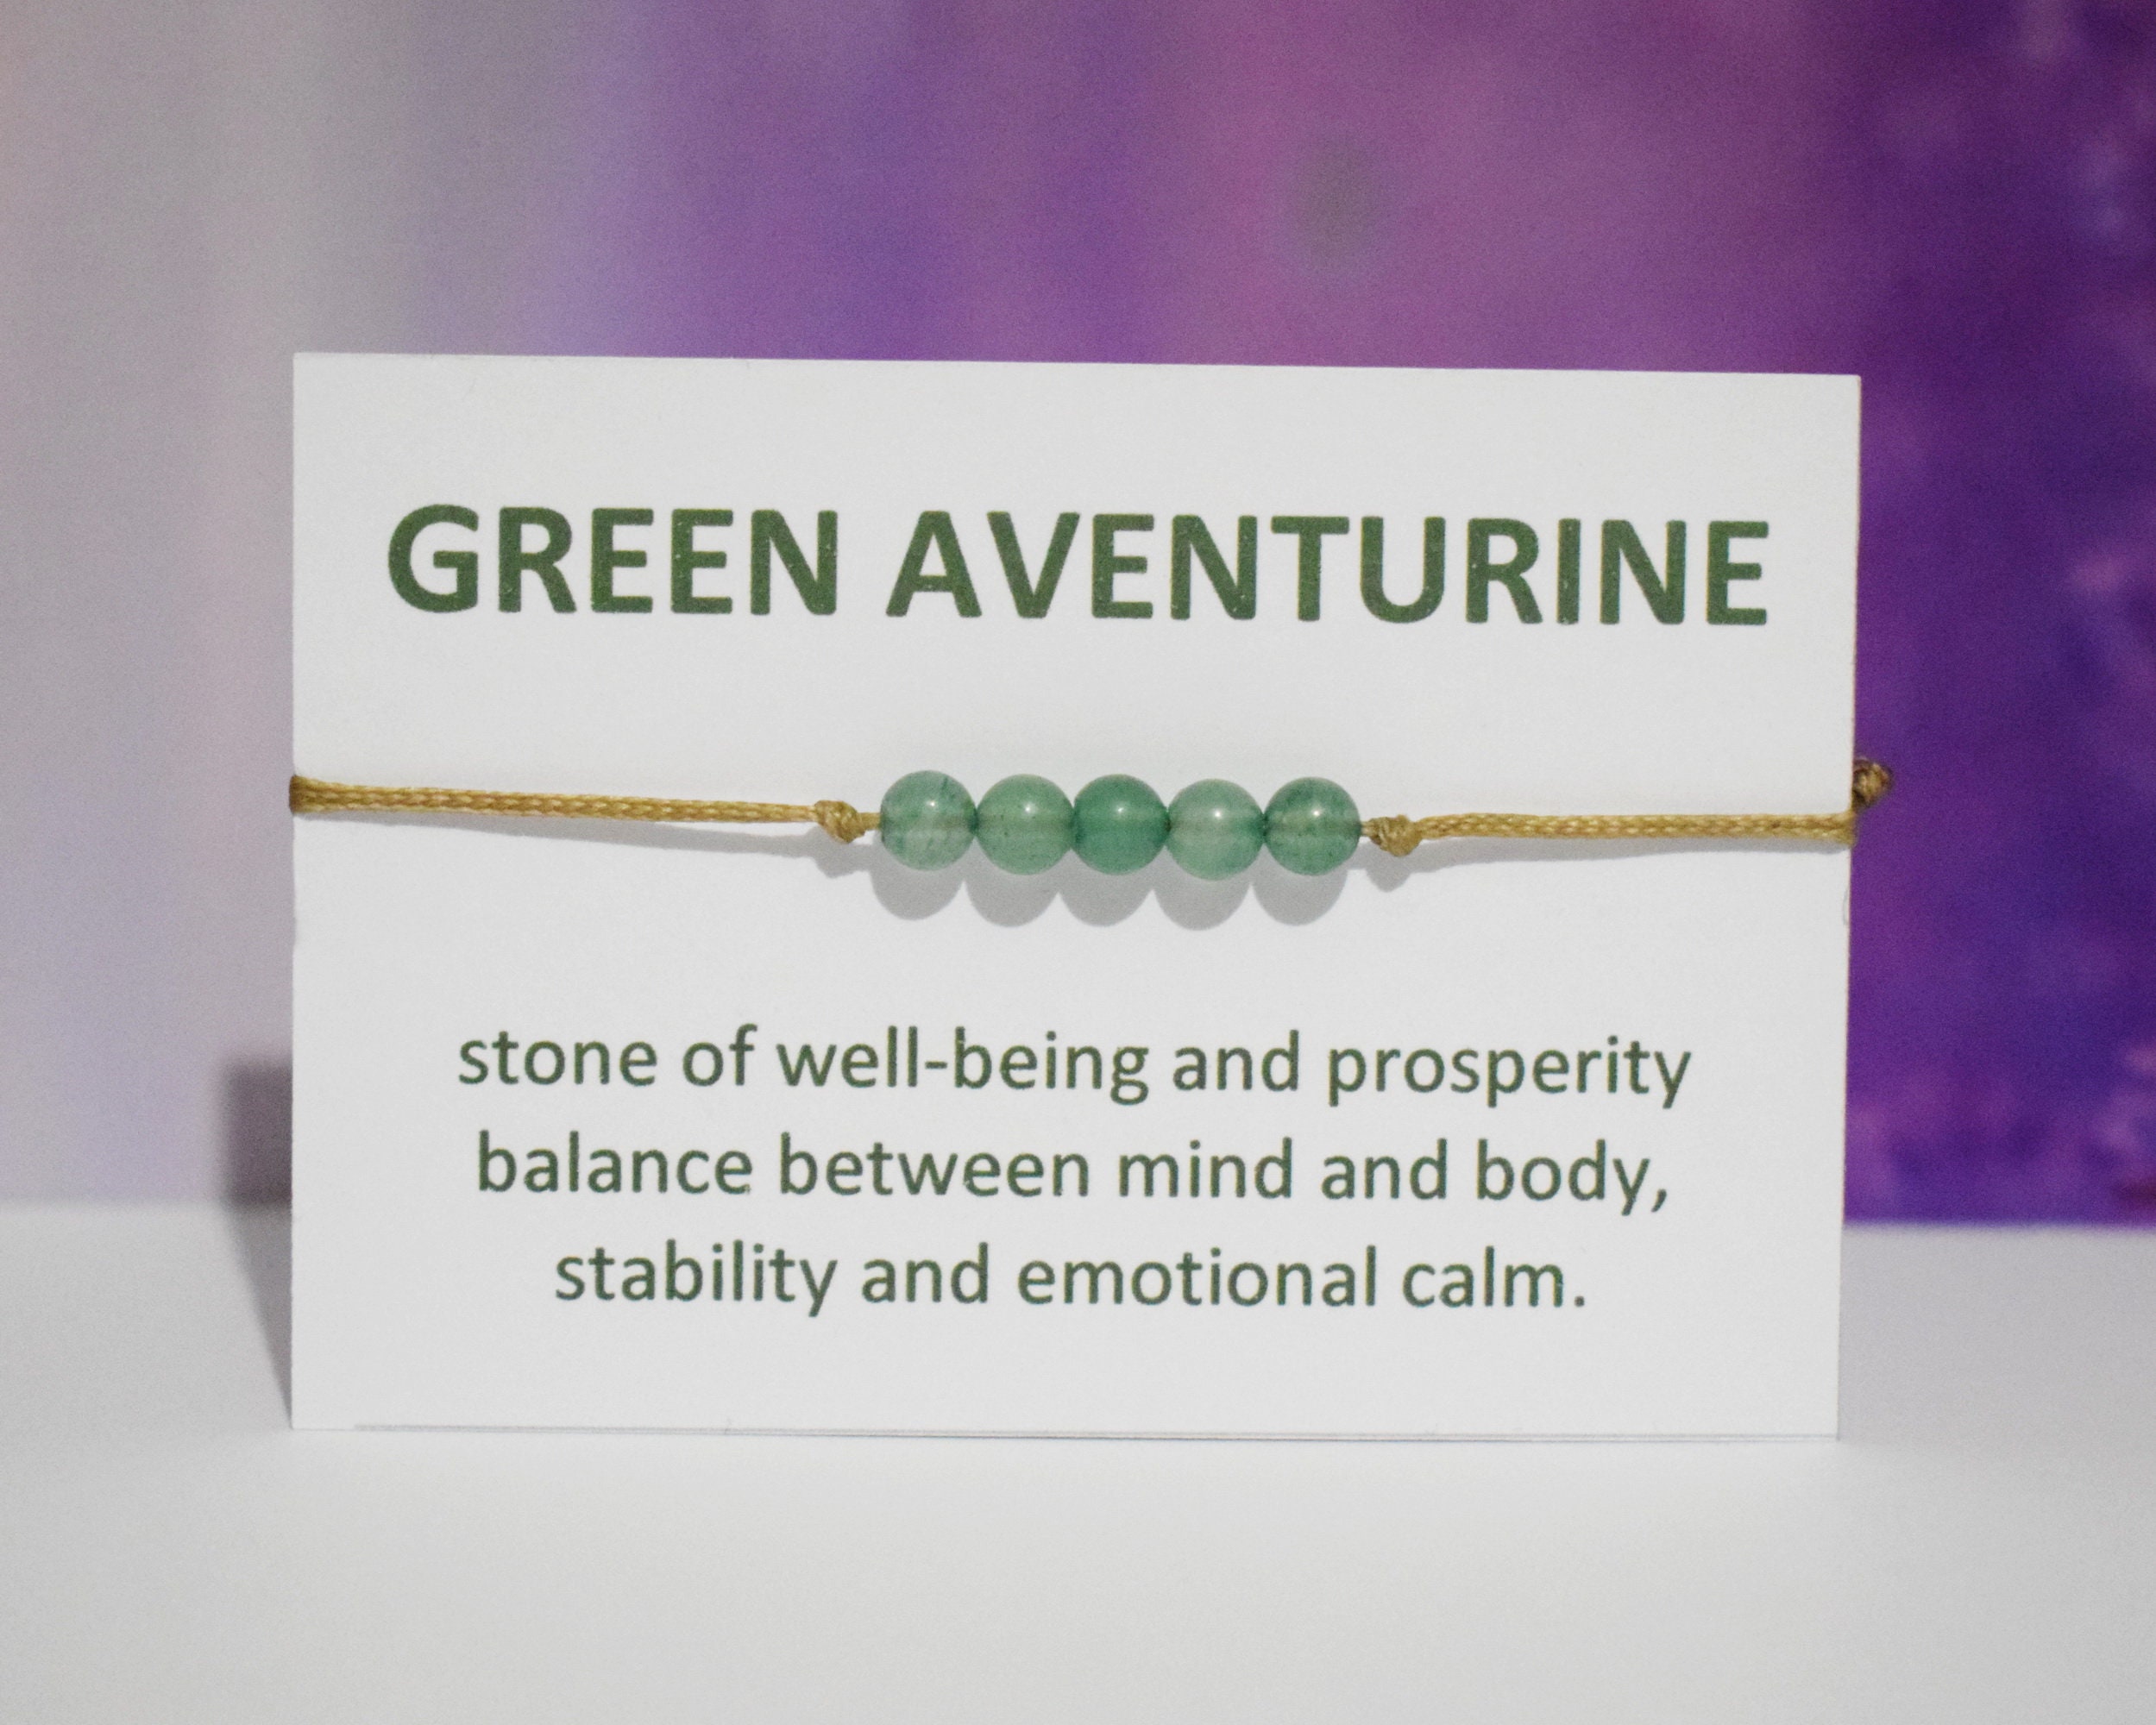 Buy Green Aventurine Bracelet Natural Aventurine Healing Bracelet for Women  Bracelet Yoga Gift Jewelry Green Stone Bracelet Lotus Charm Bracelet Online  in India - Etsy